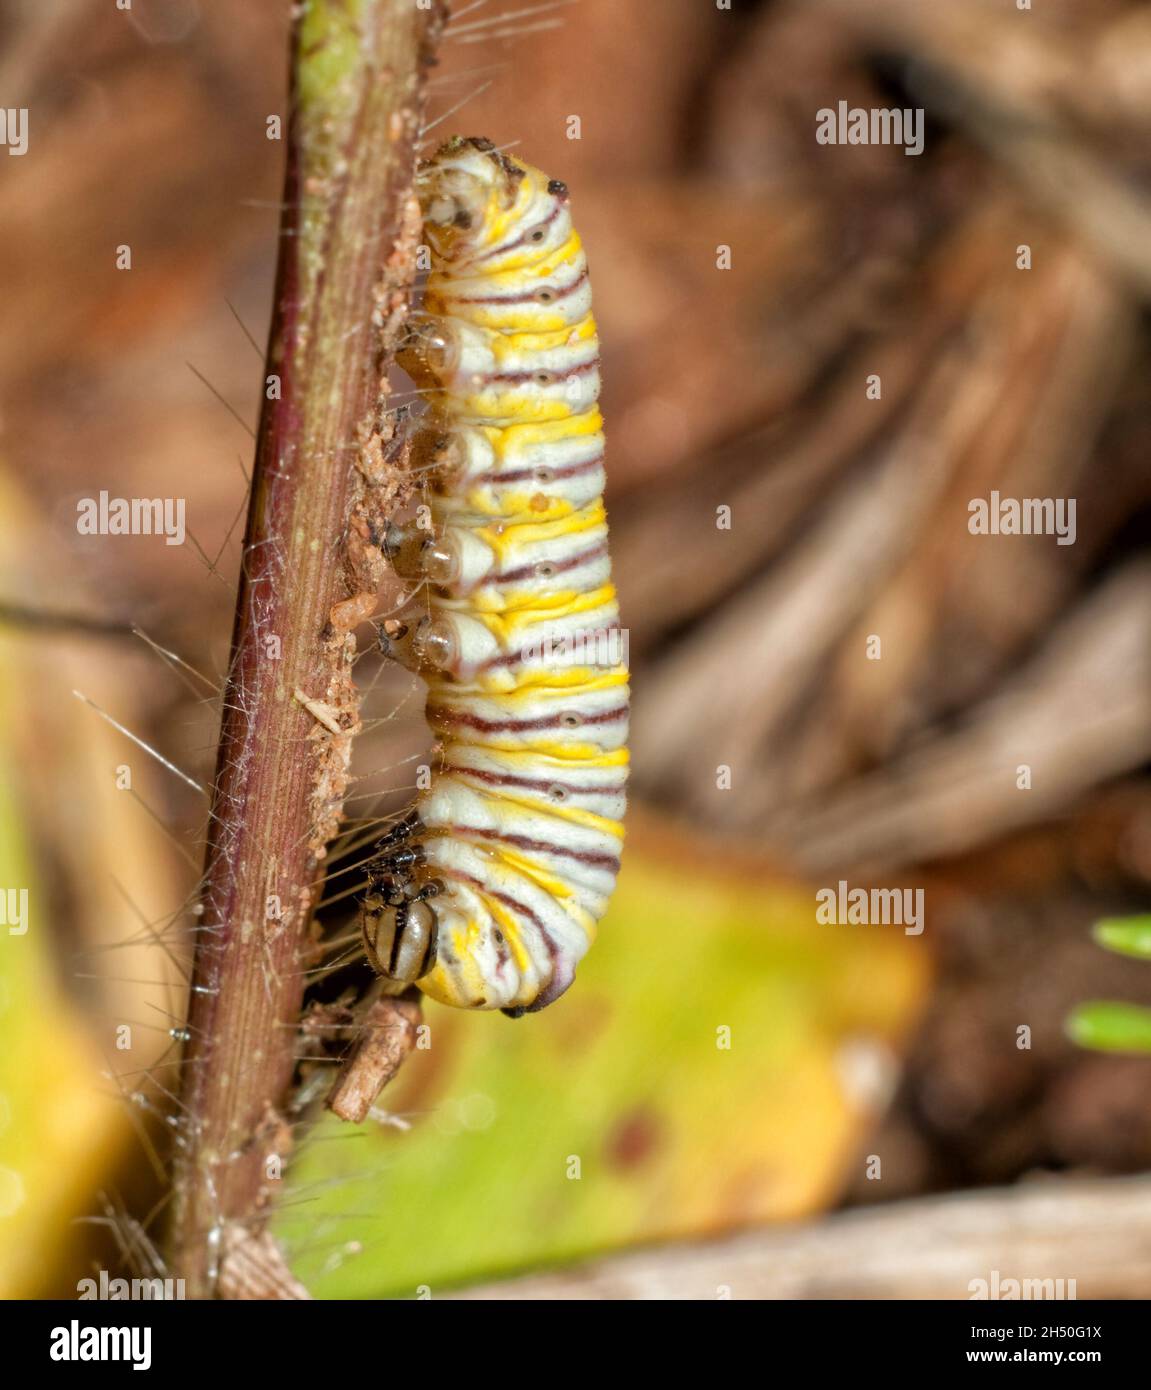 Joven oruga de mariposa monarca en proceso de desprender su piel y transformarla en el próximo instar; con su placa ya suelta y transparente Foto de stock